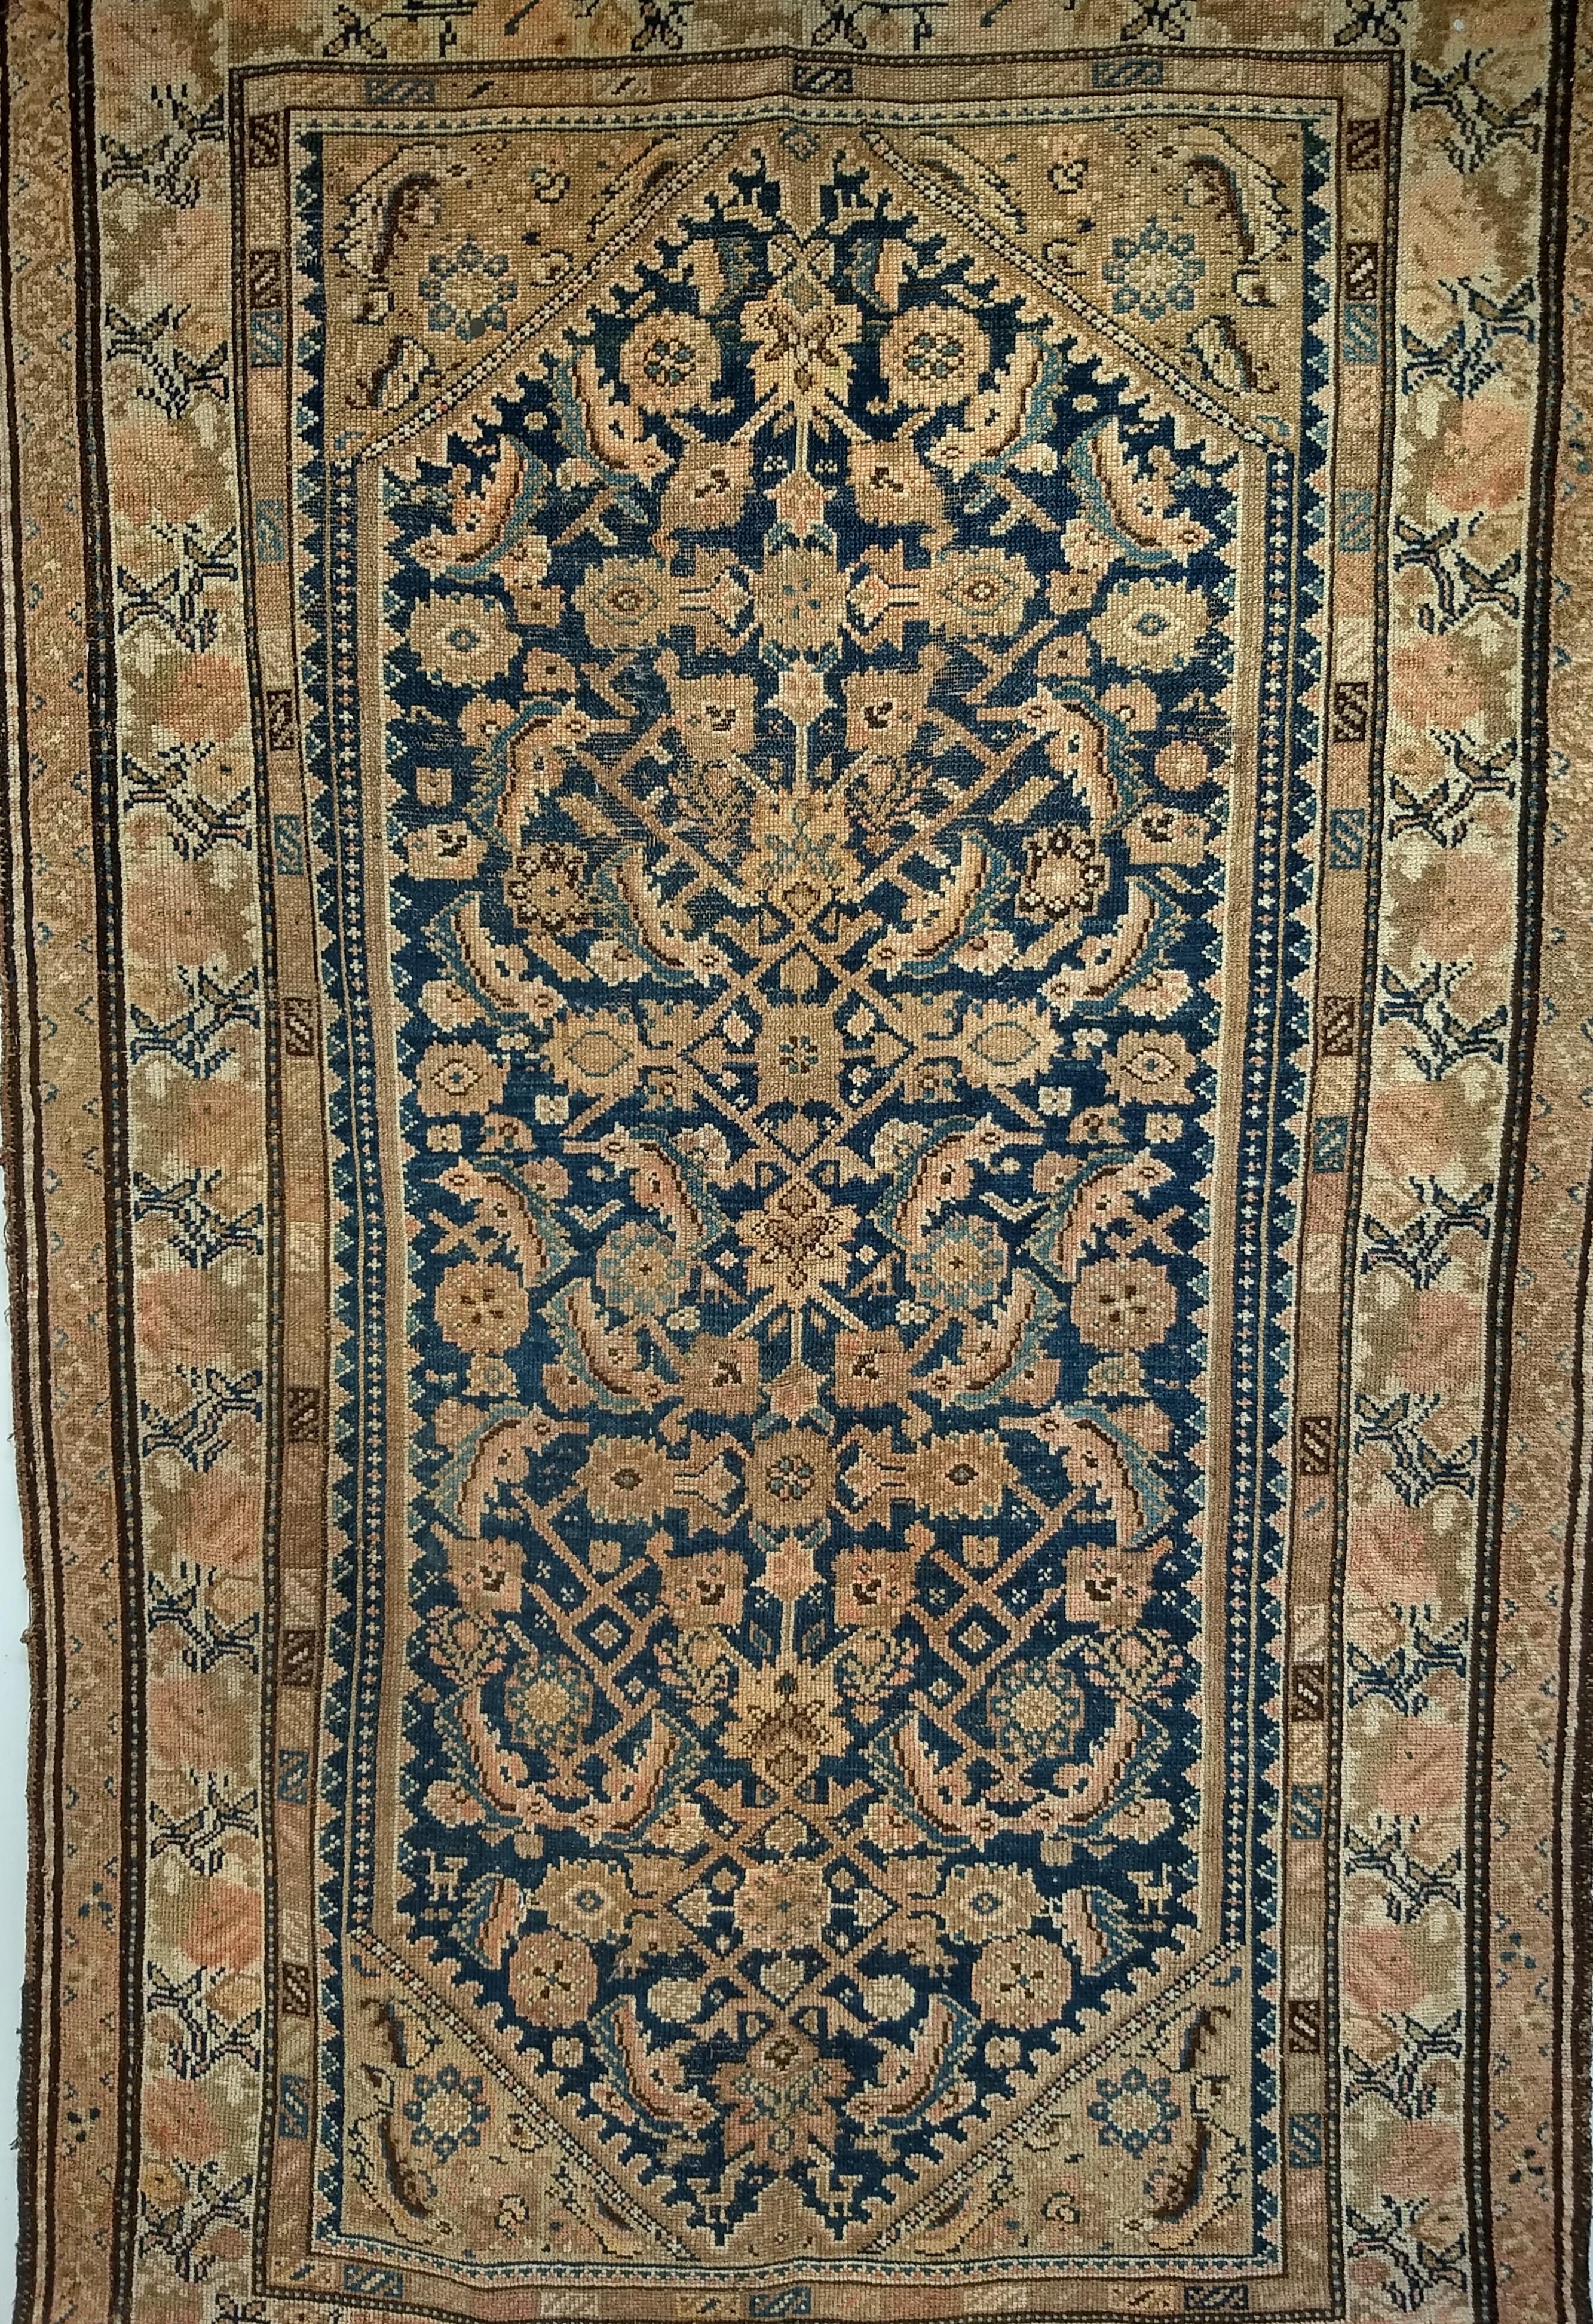 Vintage Persian Malayer in einem Allover Herati Design Teppich aus dem späten 19. Jahrhundert.  Der Teppich Malayer hat ein Allover-Herati-Muster auf einem dunkelblauen Feld und einer cremefarbenen Bordüre mit Musterfarben in Braun und